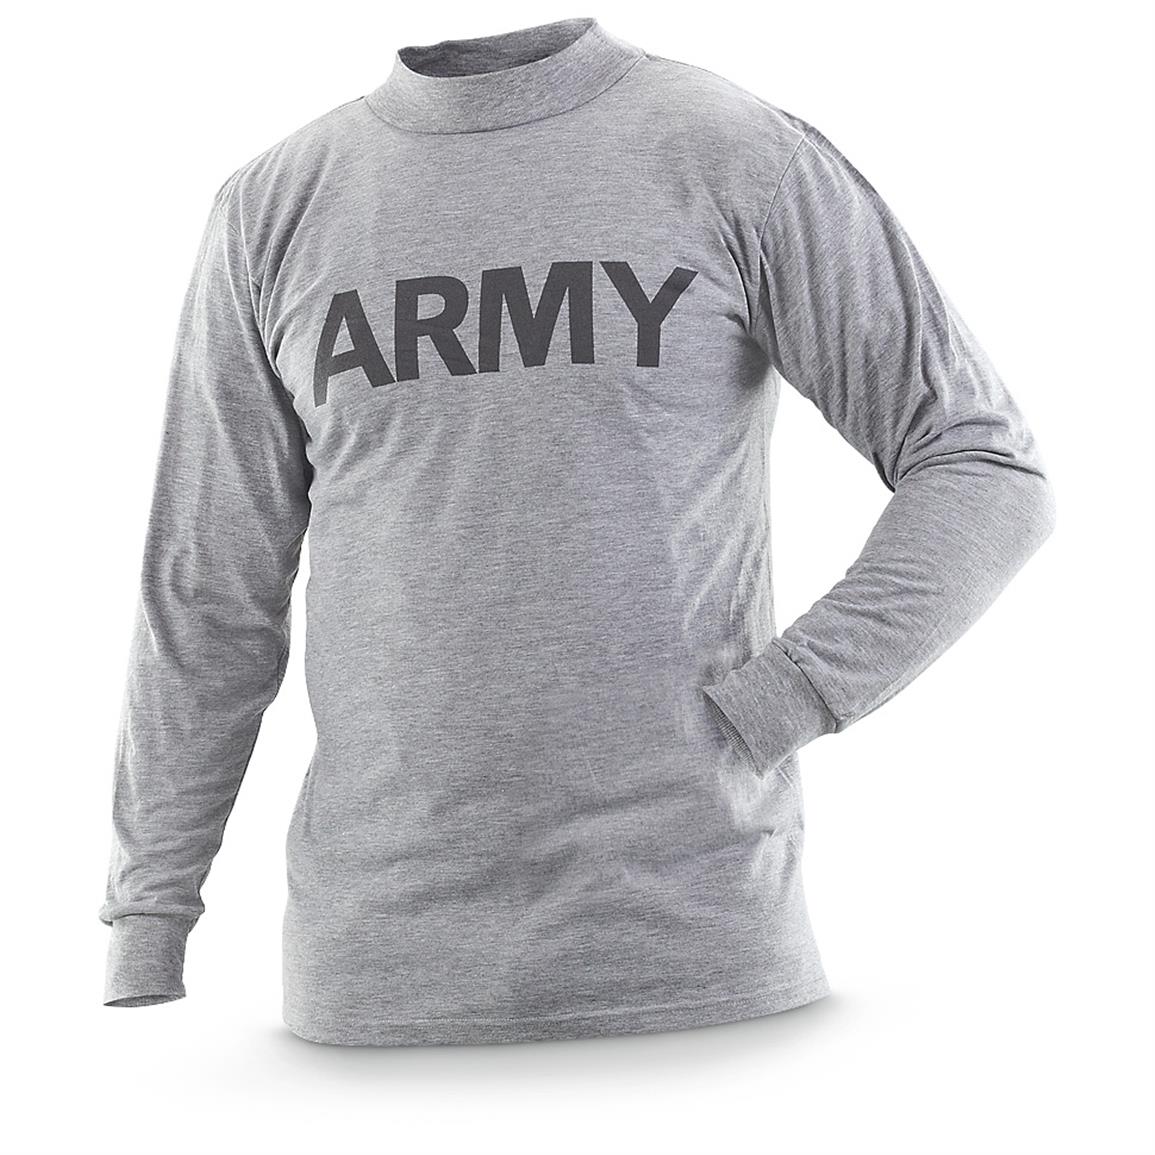 Army Tshirts - Army Military